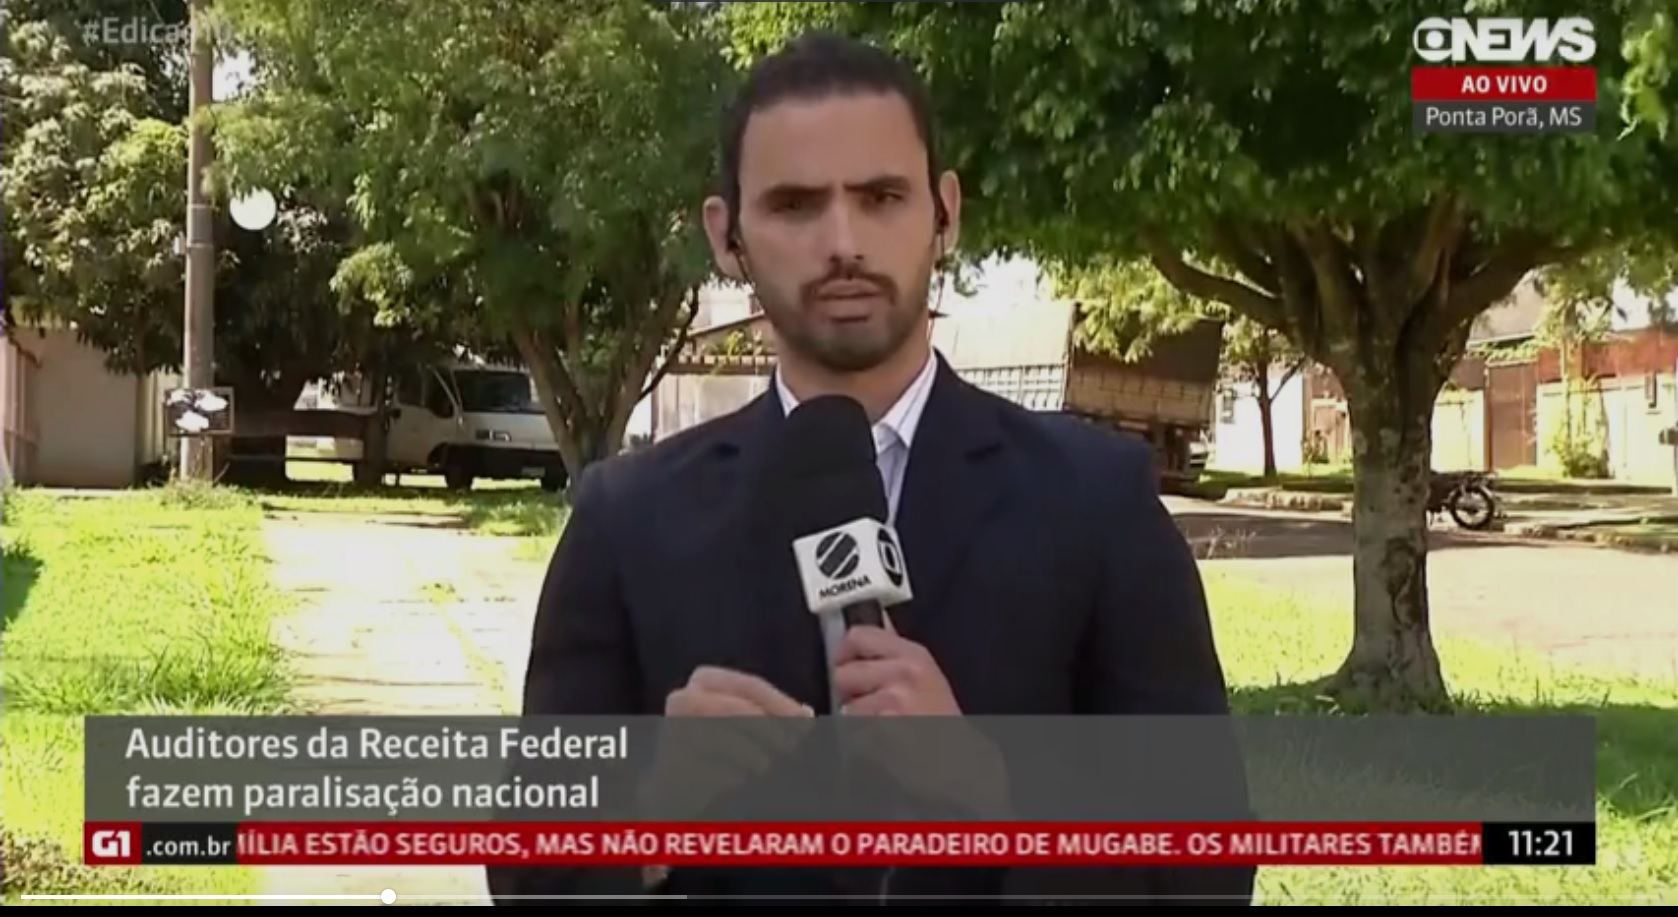 Paralisação nacional dos Auditores da Receita Federal na Globo News